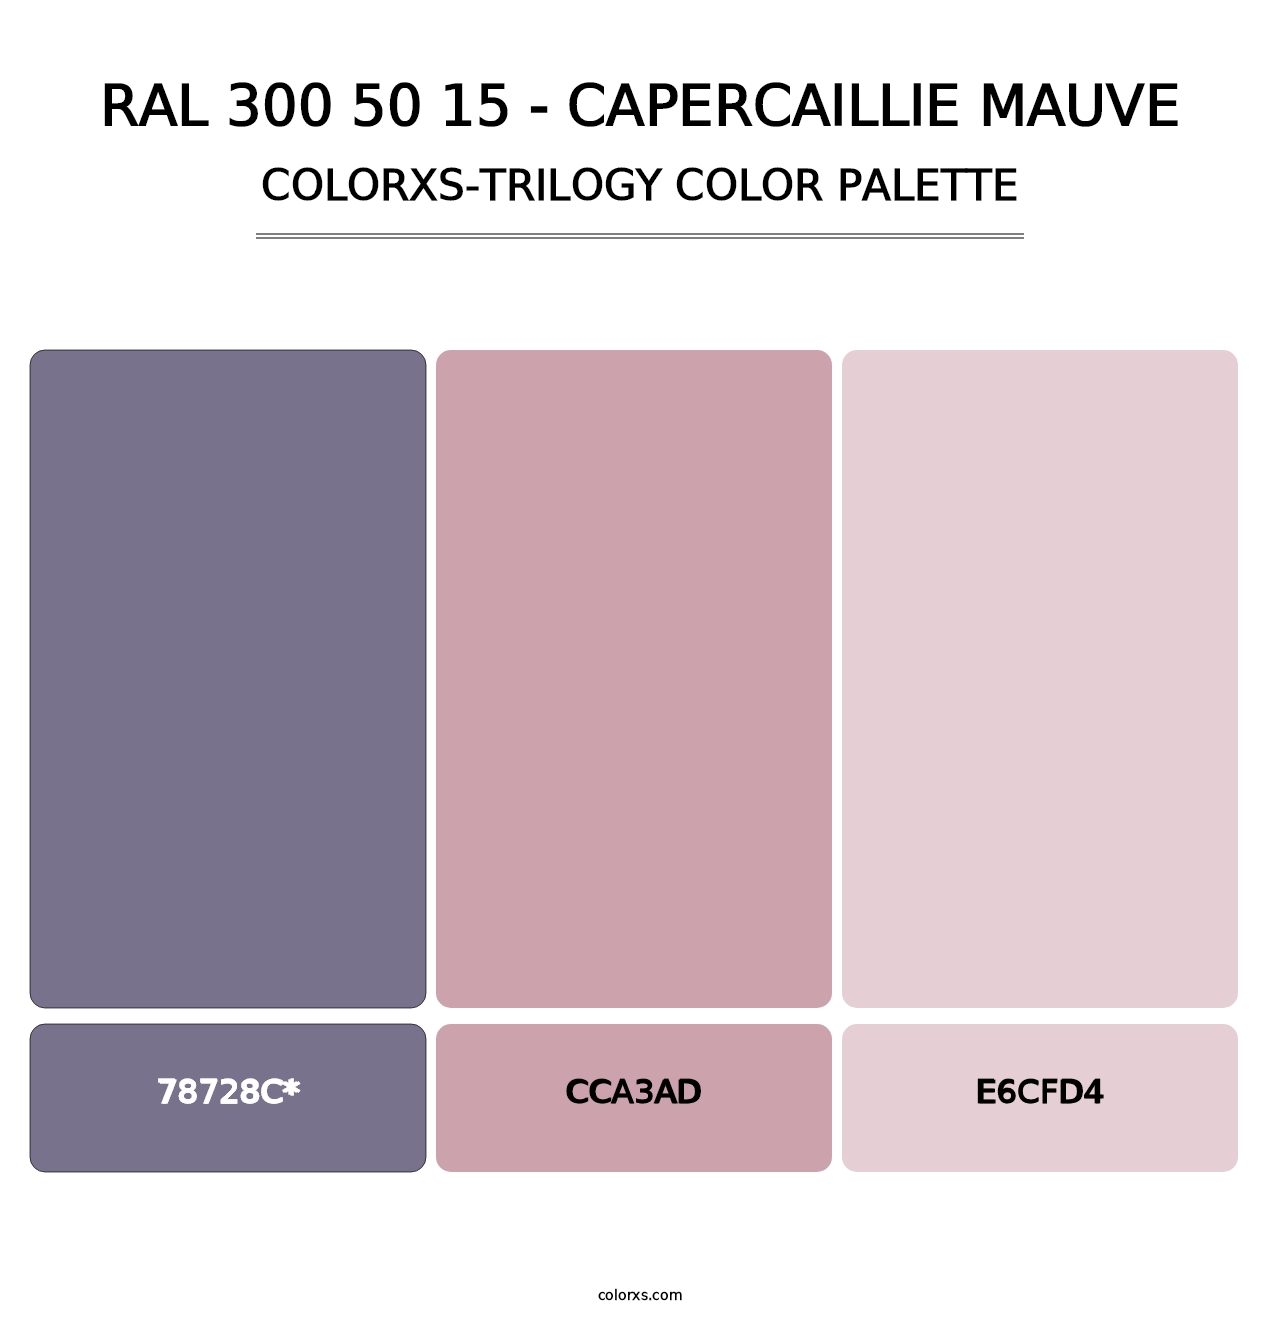 RAL 300 50 15 - Capercaillie Mauve - Colorxs Trilogy Palette